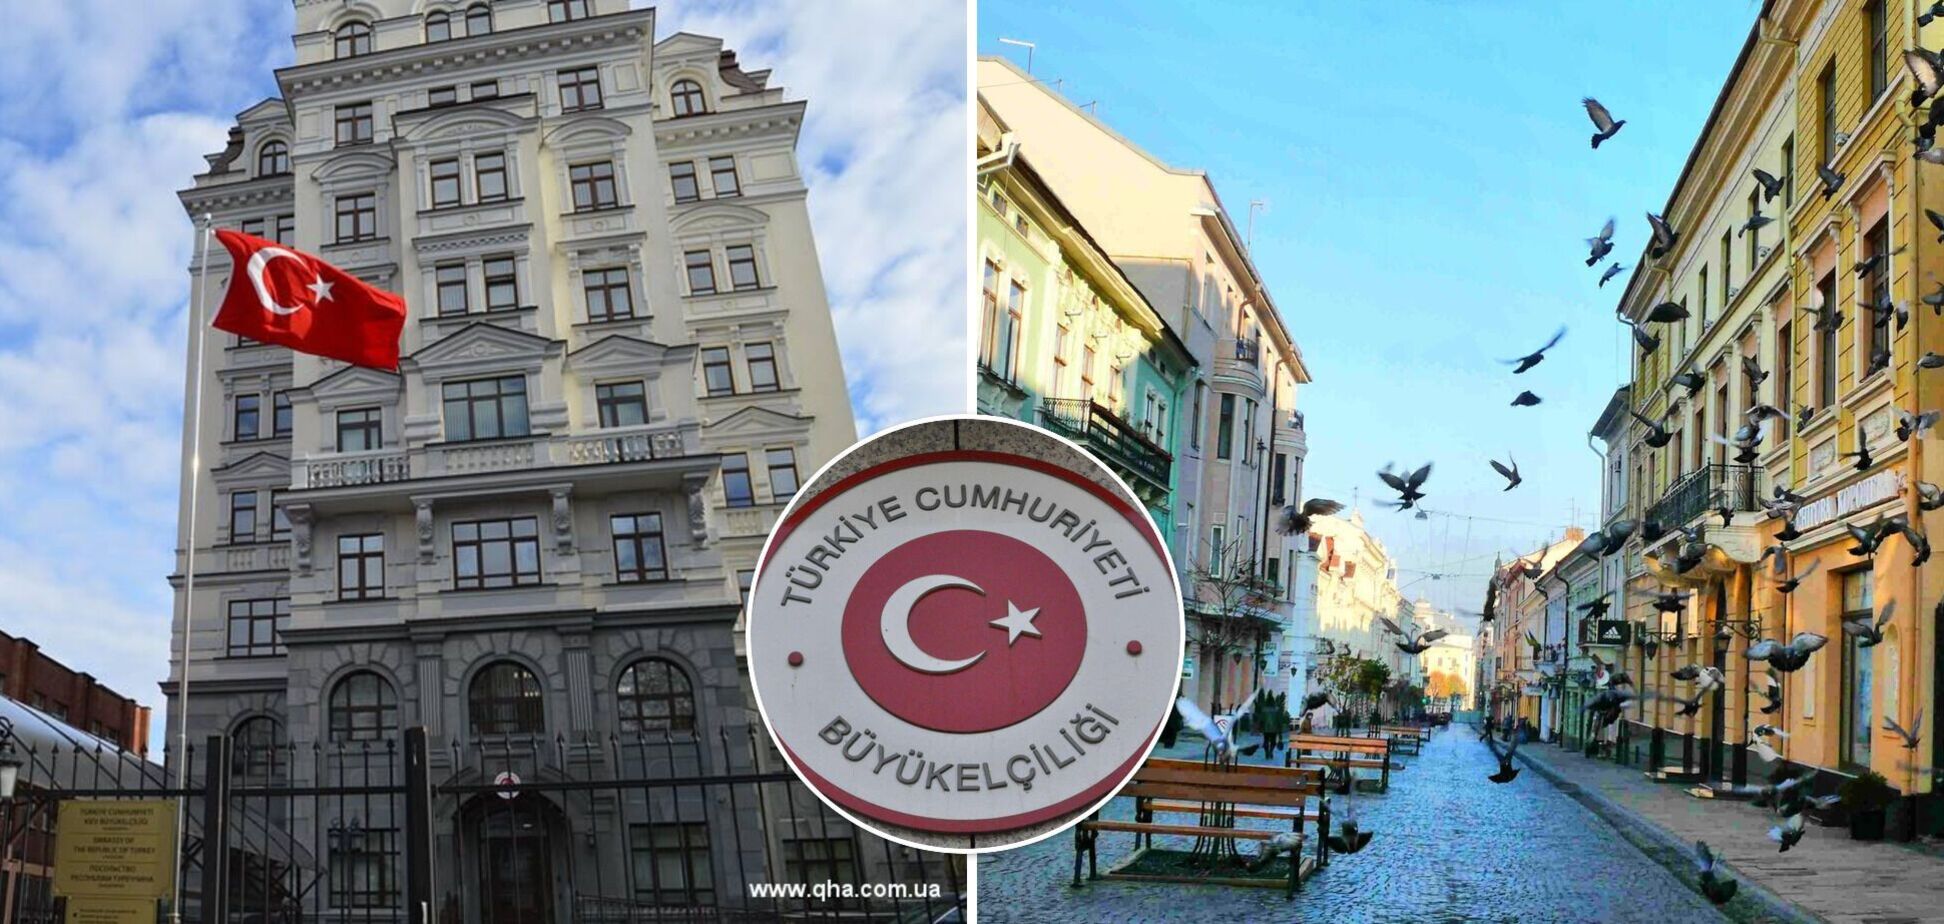 Туреччина одна з останніх переносить своє посольство з Києва